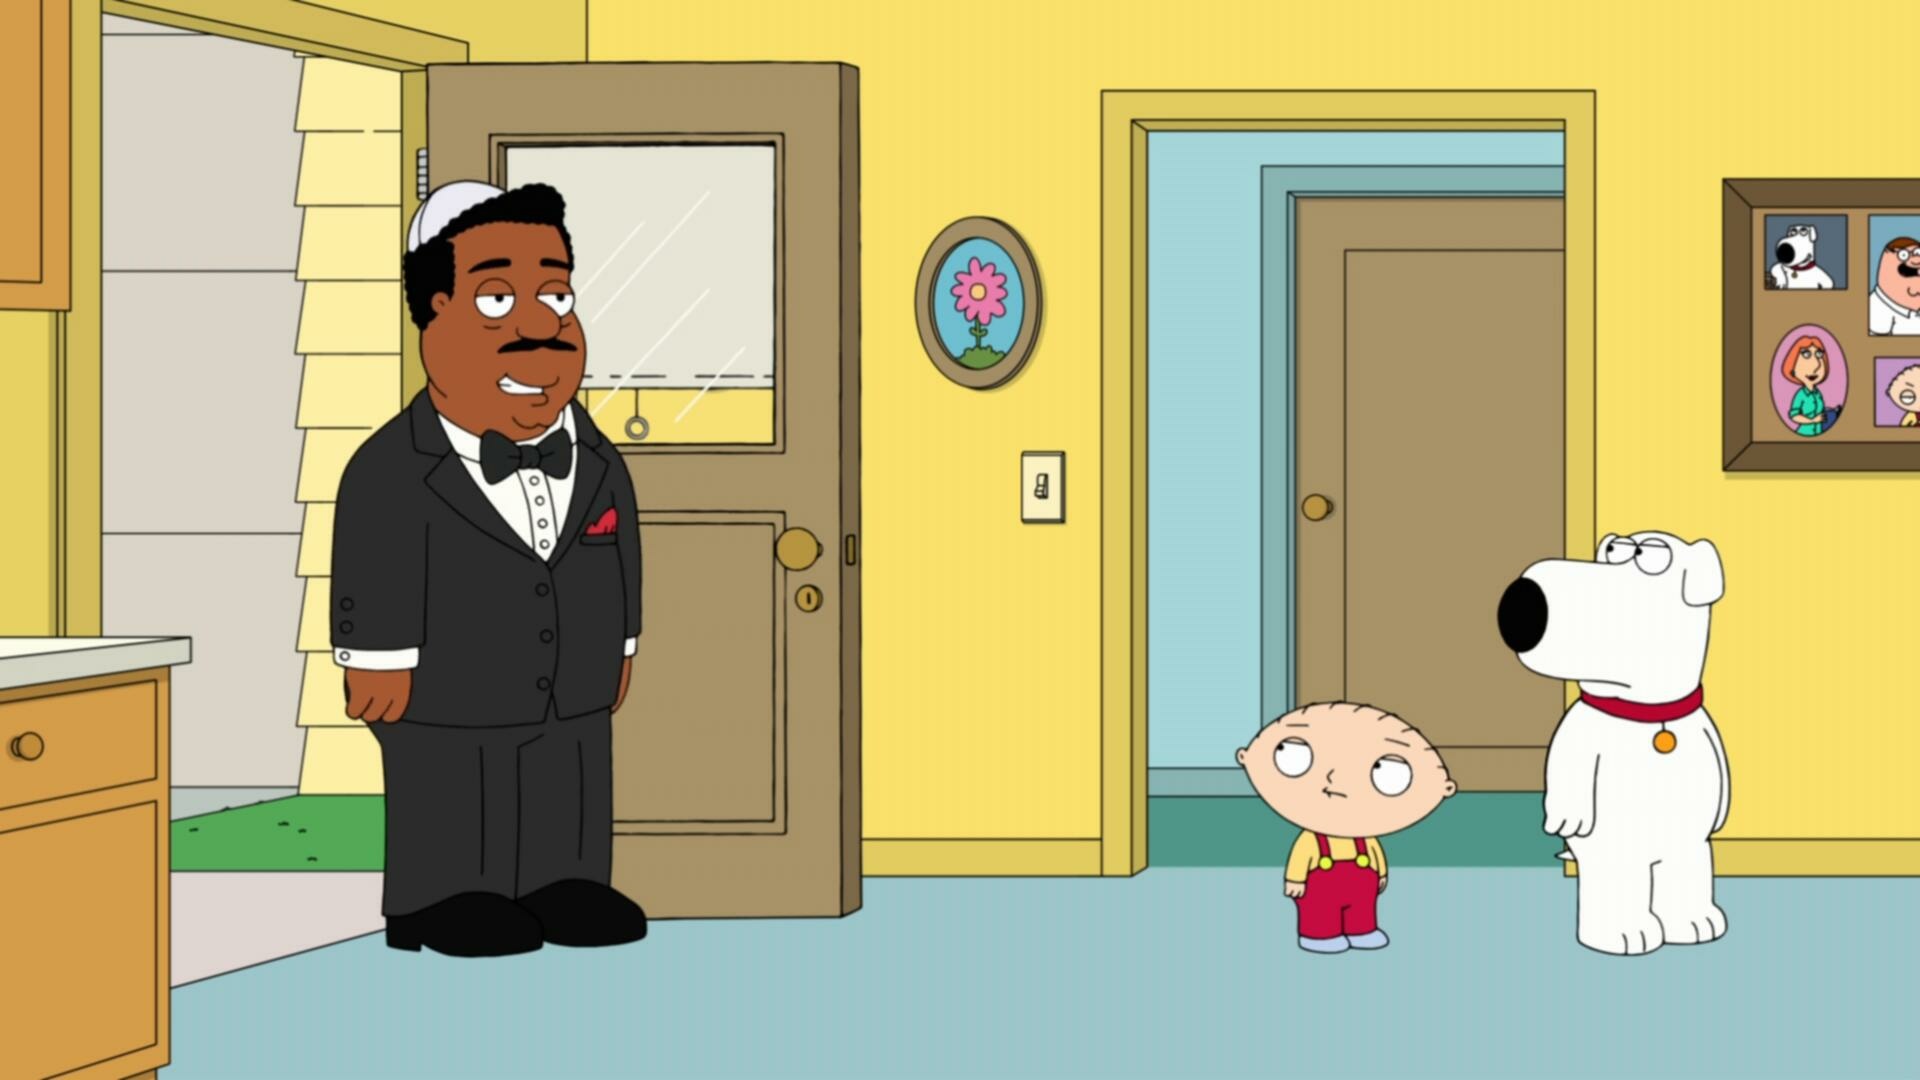 Family Guy S22E15 1080p WEB H264 SuccessfulCrab TGx